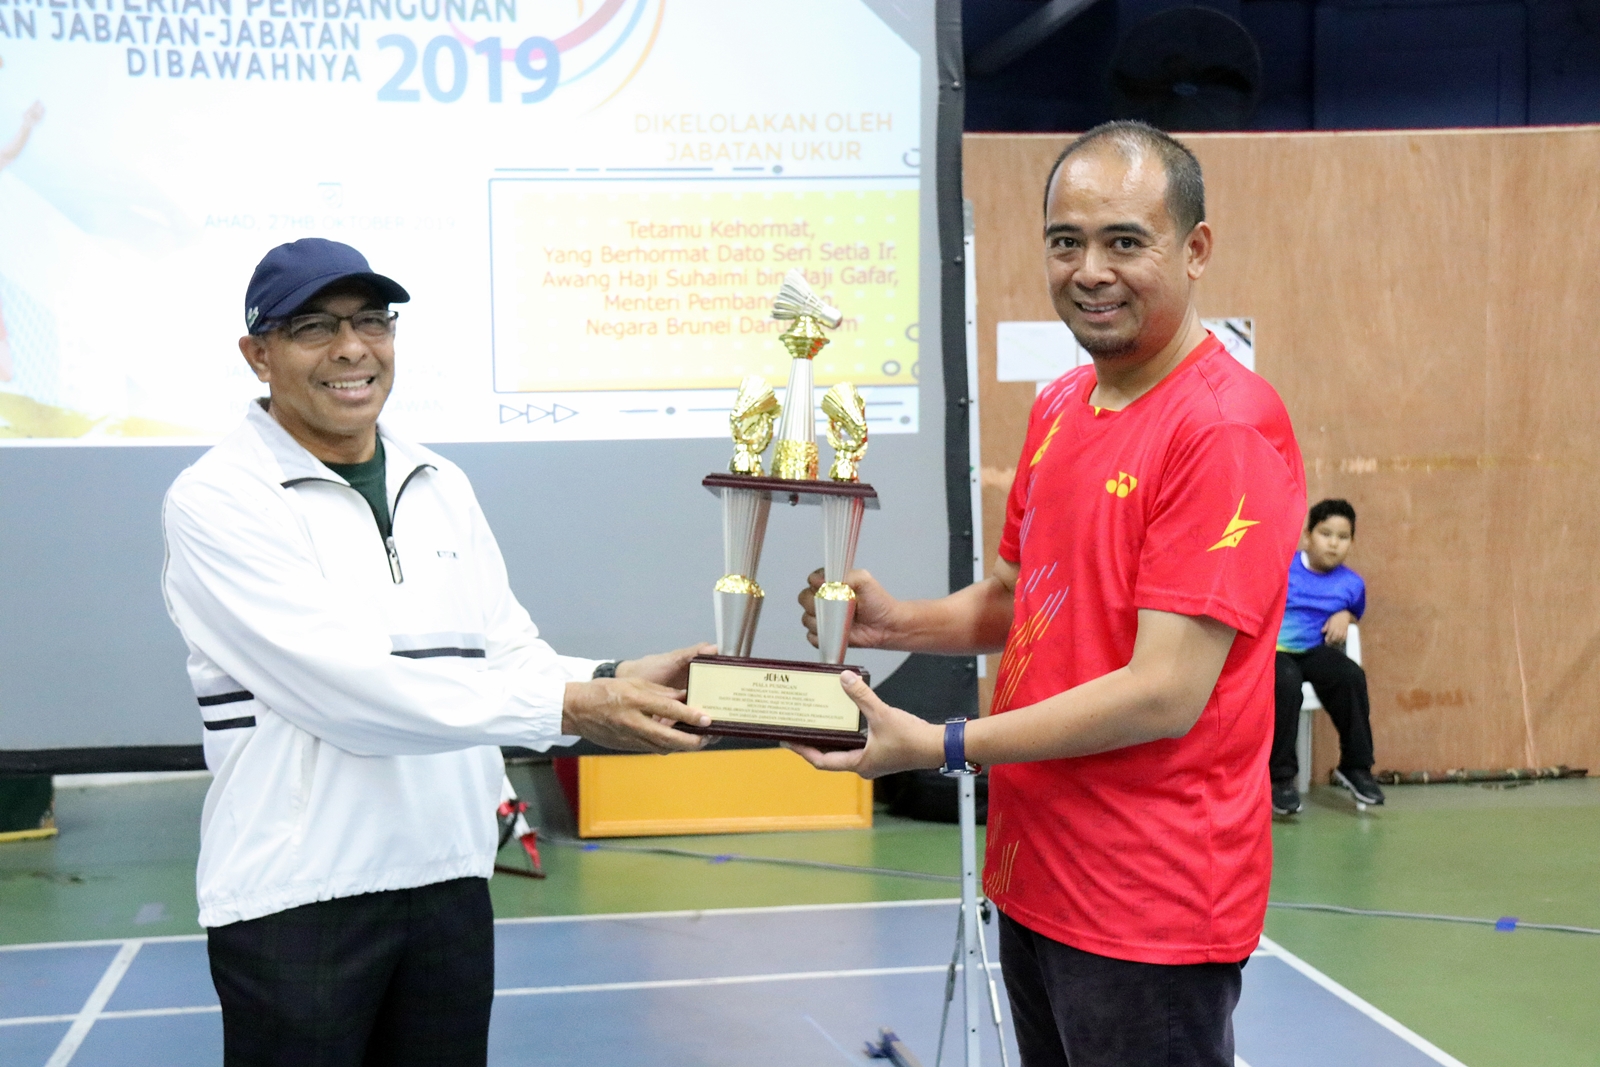 4_Kejohanan Badminton Kementerian Pembangunan tahun 2019.JPG